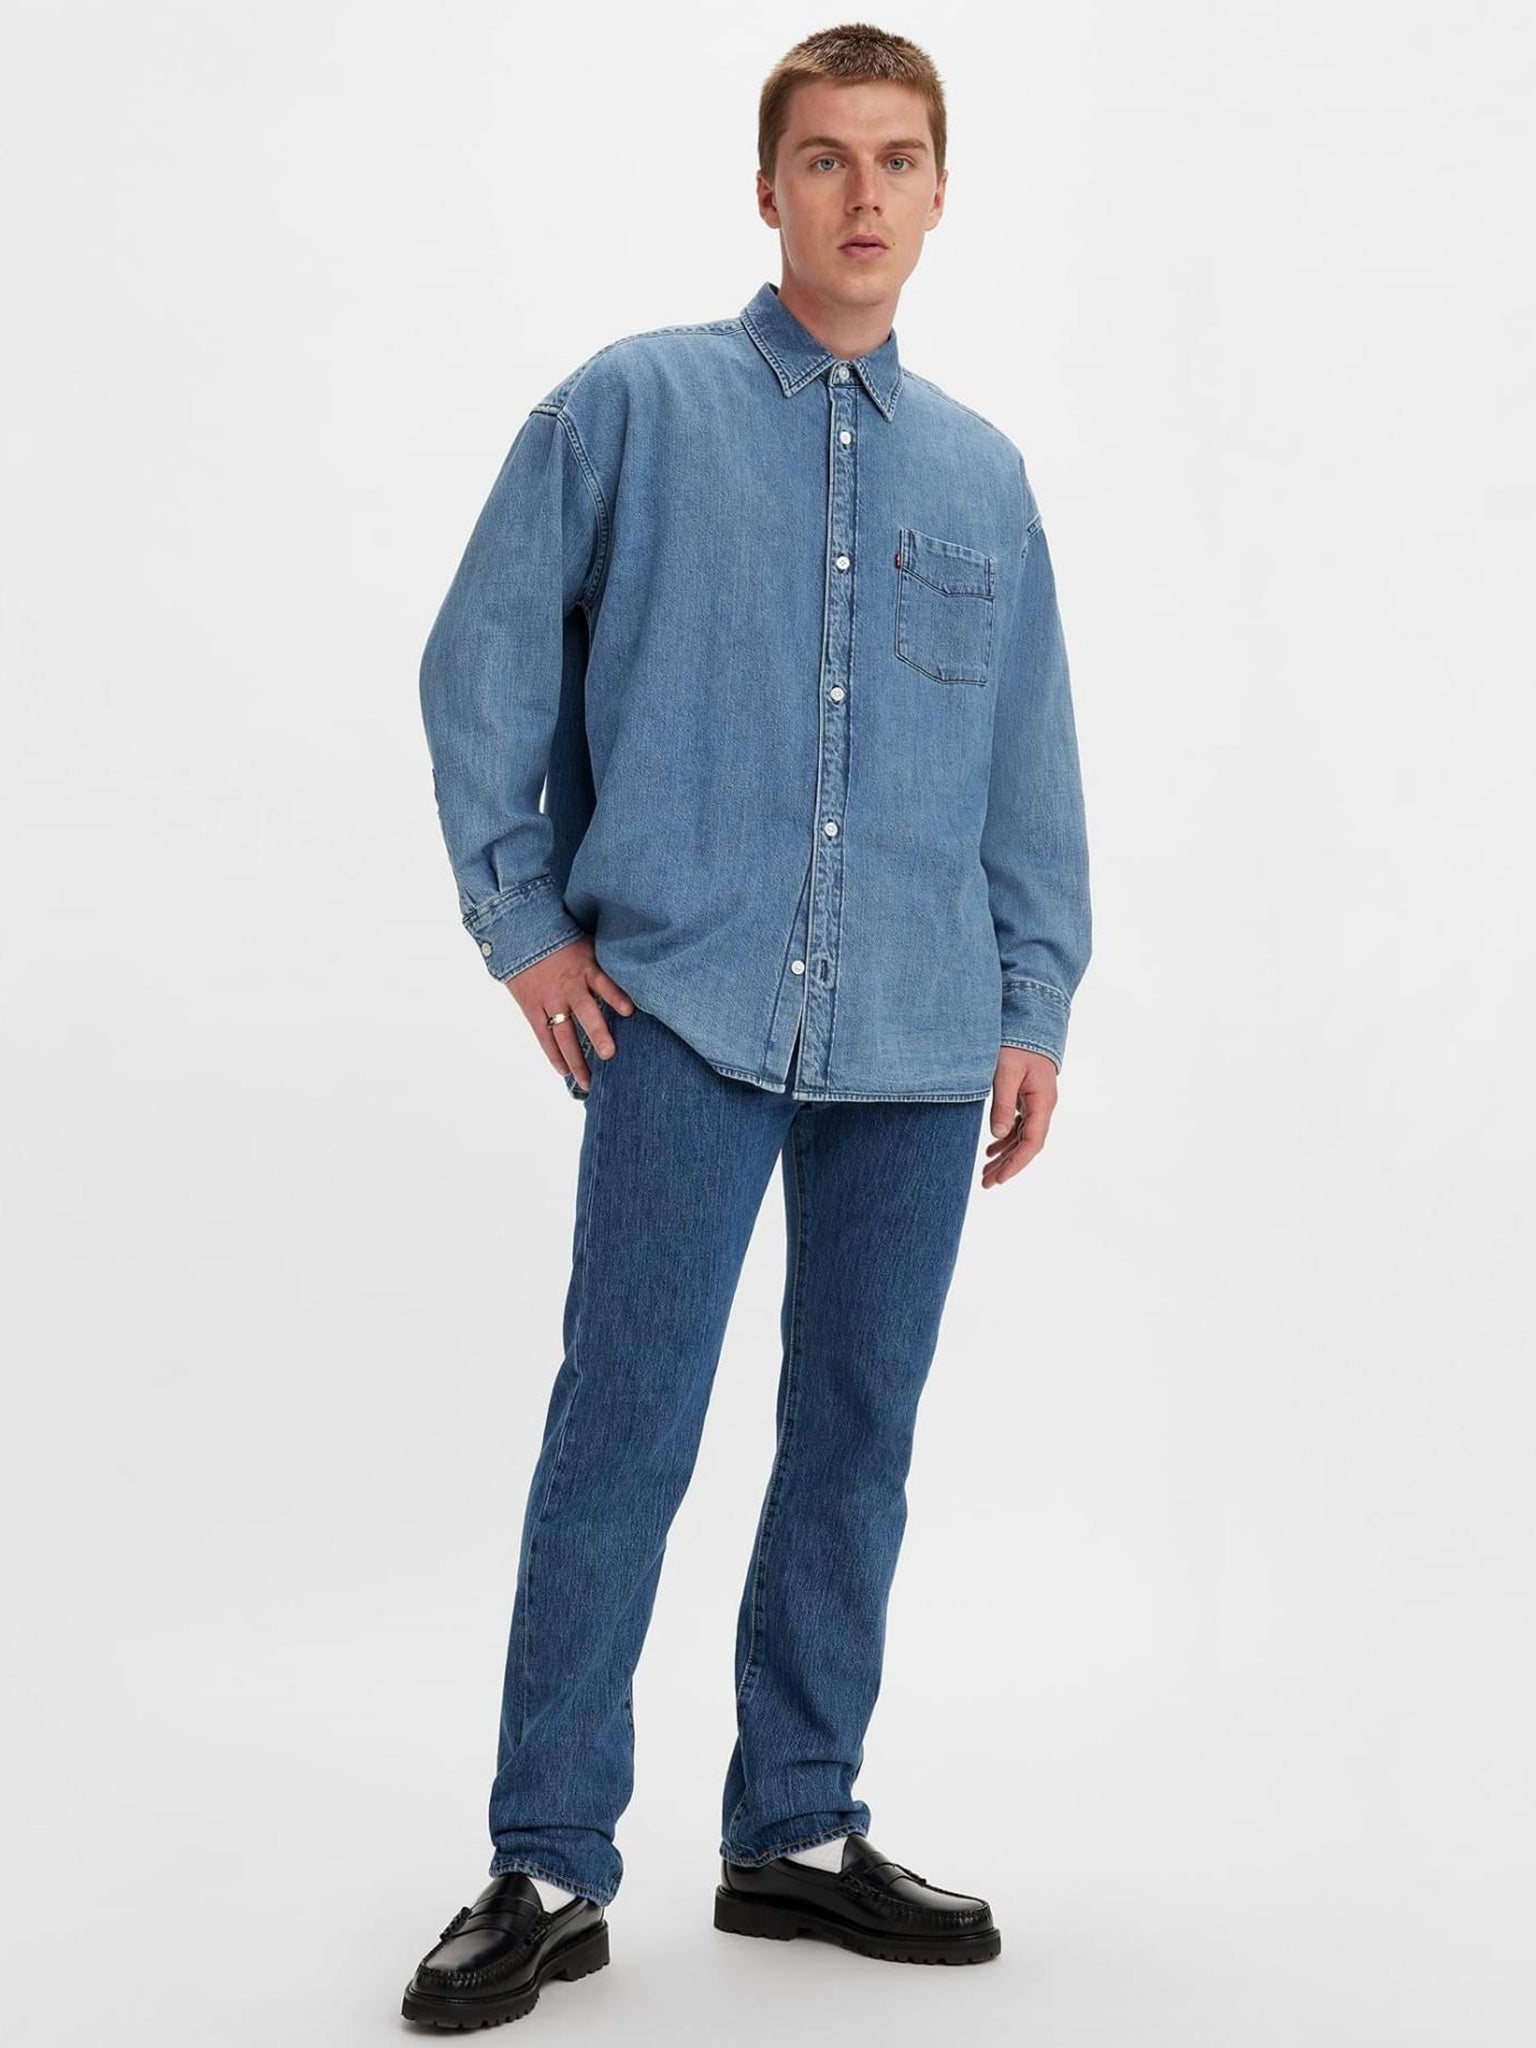 Ανδρικό παντελόνι τζιν 501® Levi's® Original Jeans 005010114 | 005010114